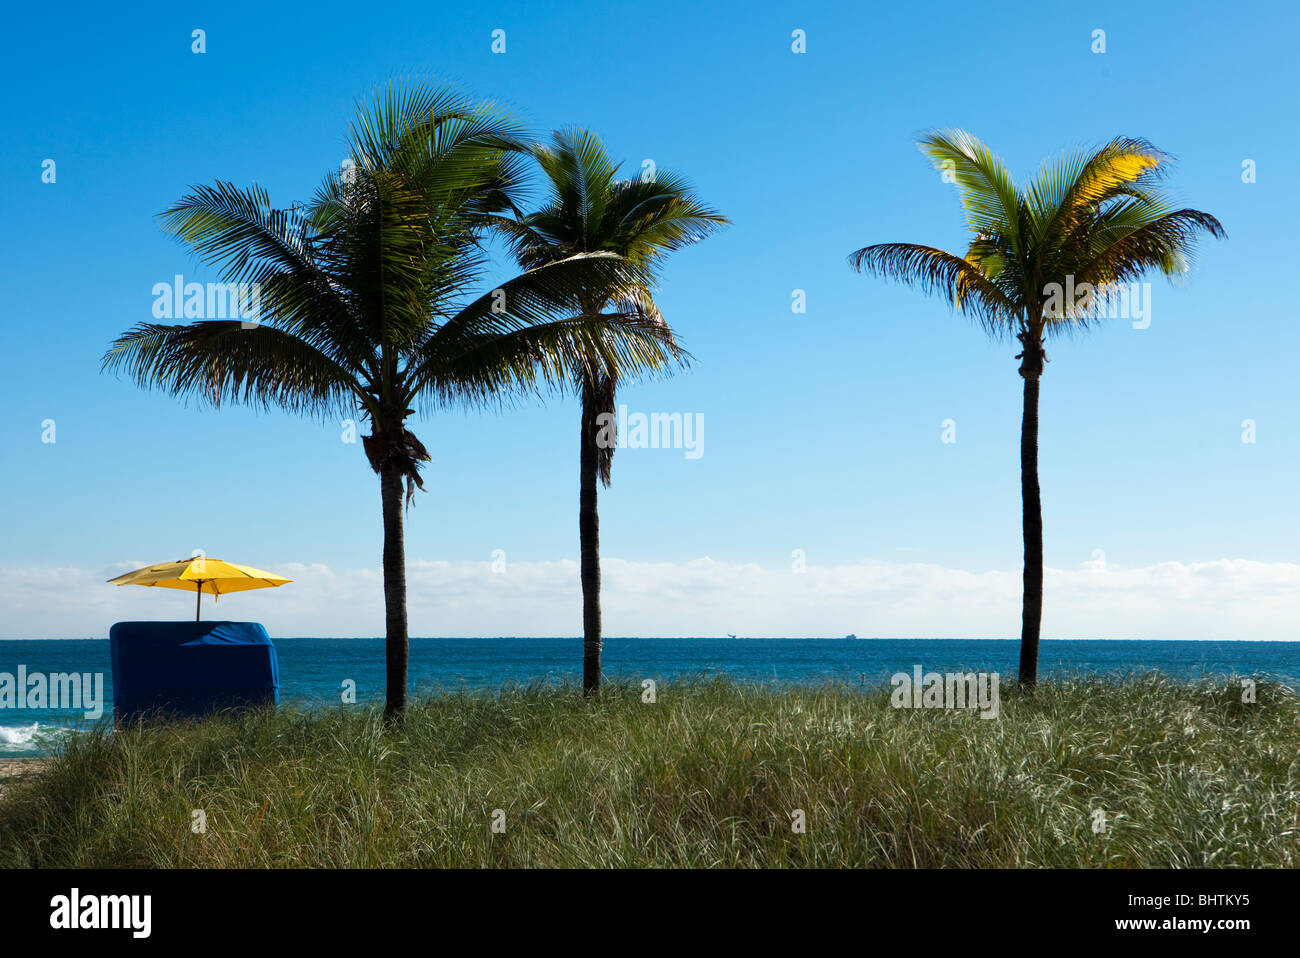 Un unico ombrello sulla spiaggia situato accanto a tre alberi di palma fornisce la solitudine e tranquillità durante le vacanze. Foto Stock